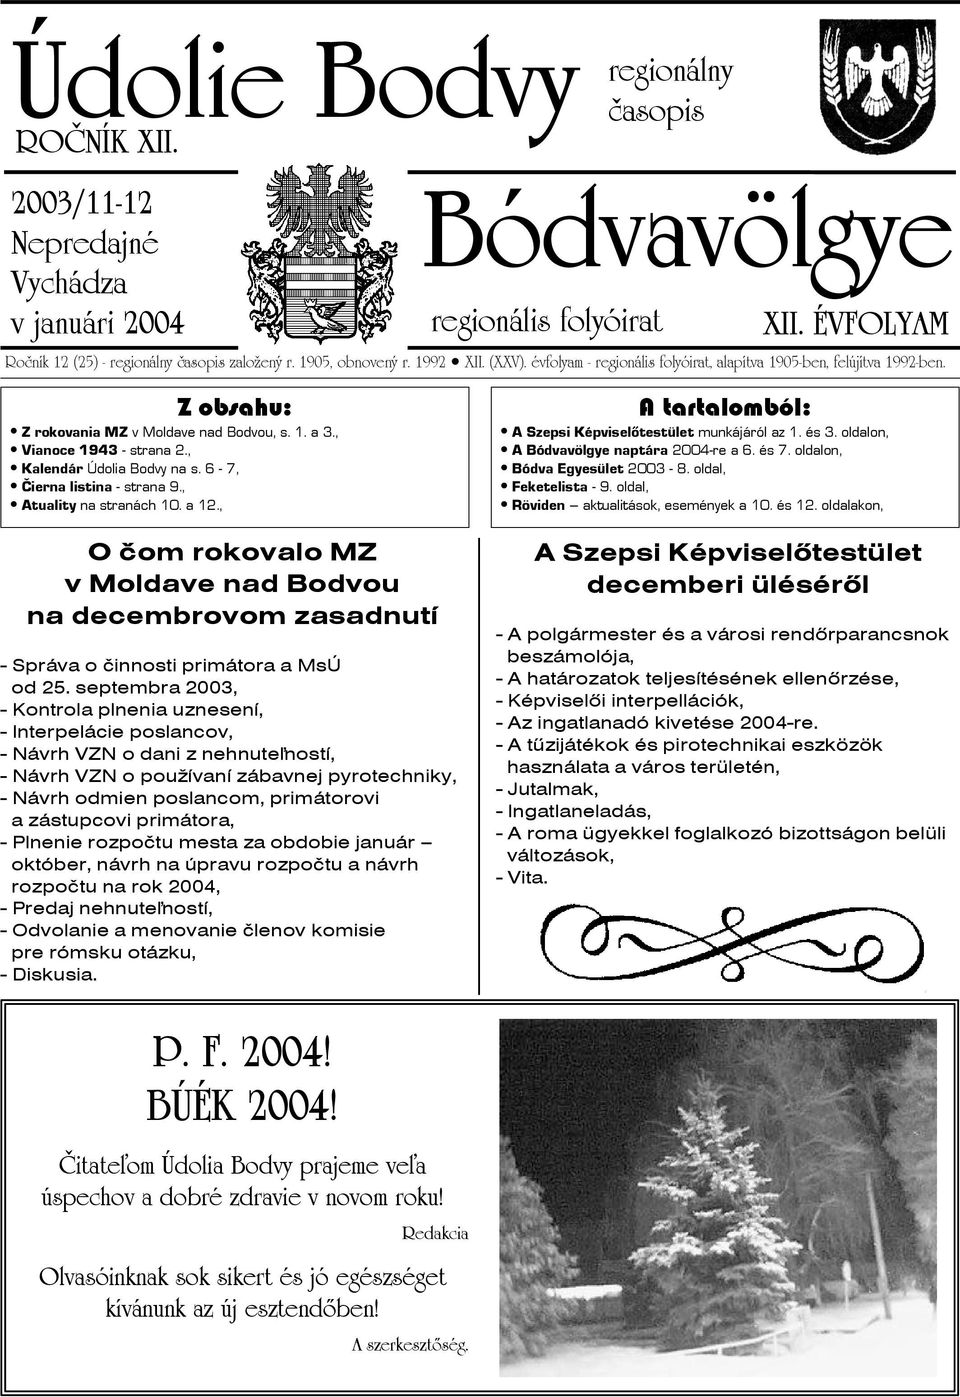 , Kalendár Údolia Bodvy na s. 6-7, Čierna listina - strana 9., Atuality na stranách 10. a 12.